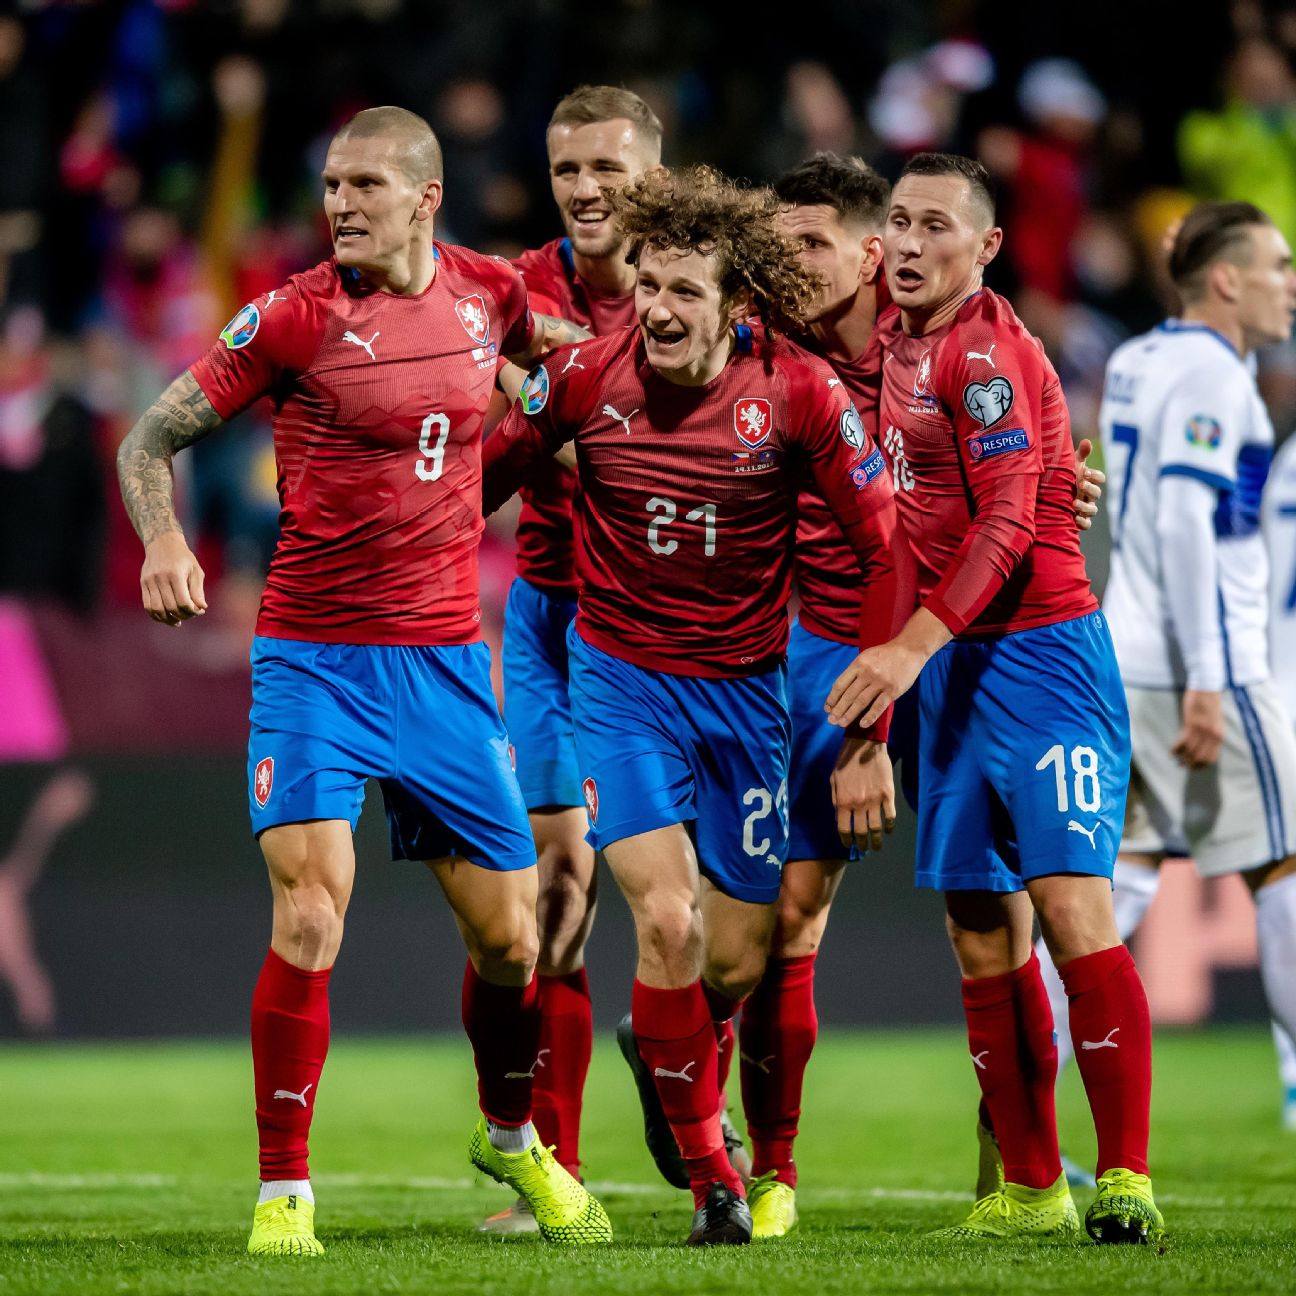 Czechia 2-1 Kosovo (Nov 14, 2019) Game Analysis